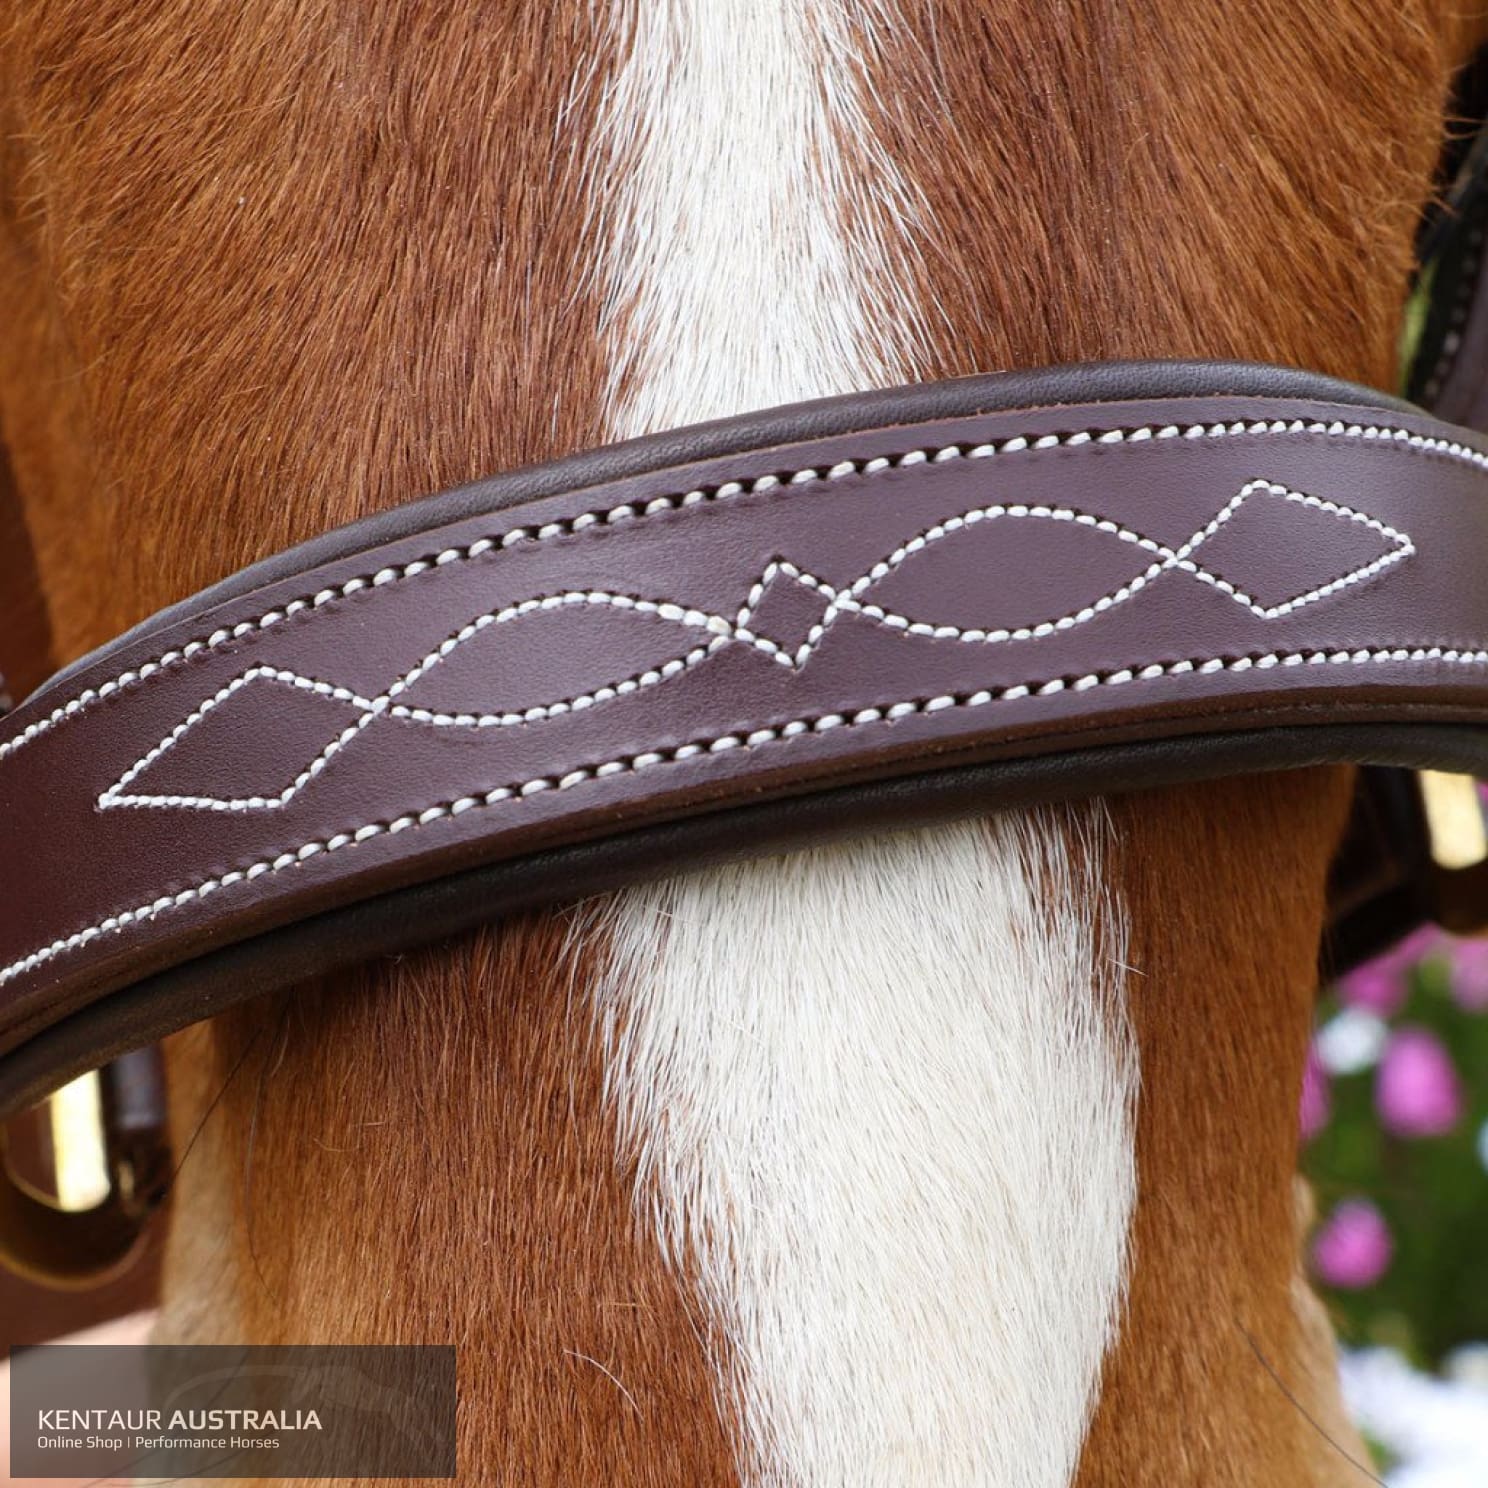 Kentaur Leather Halter With Stitching Halters &amp; Flyveils